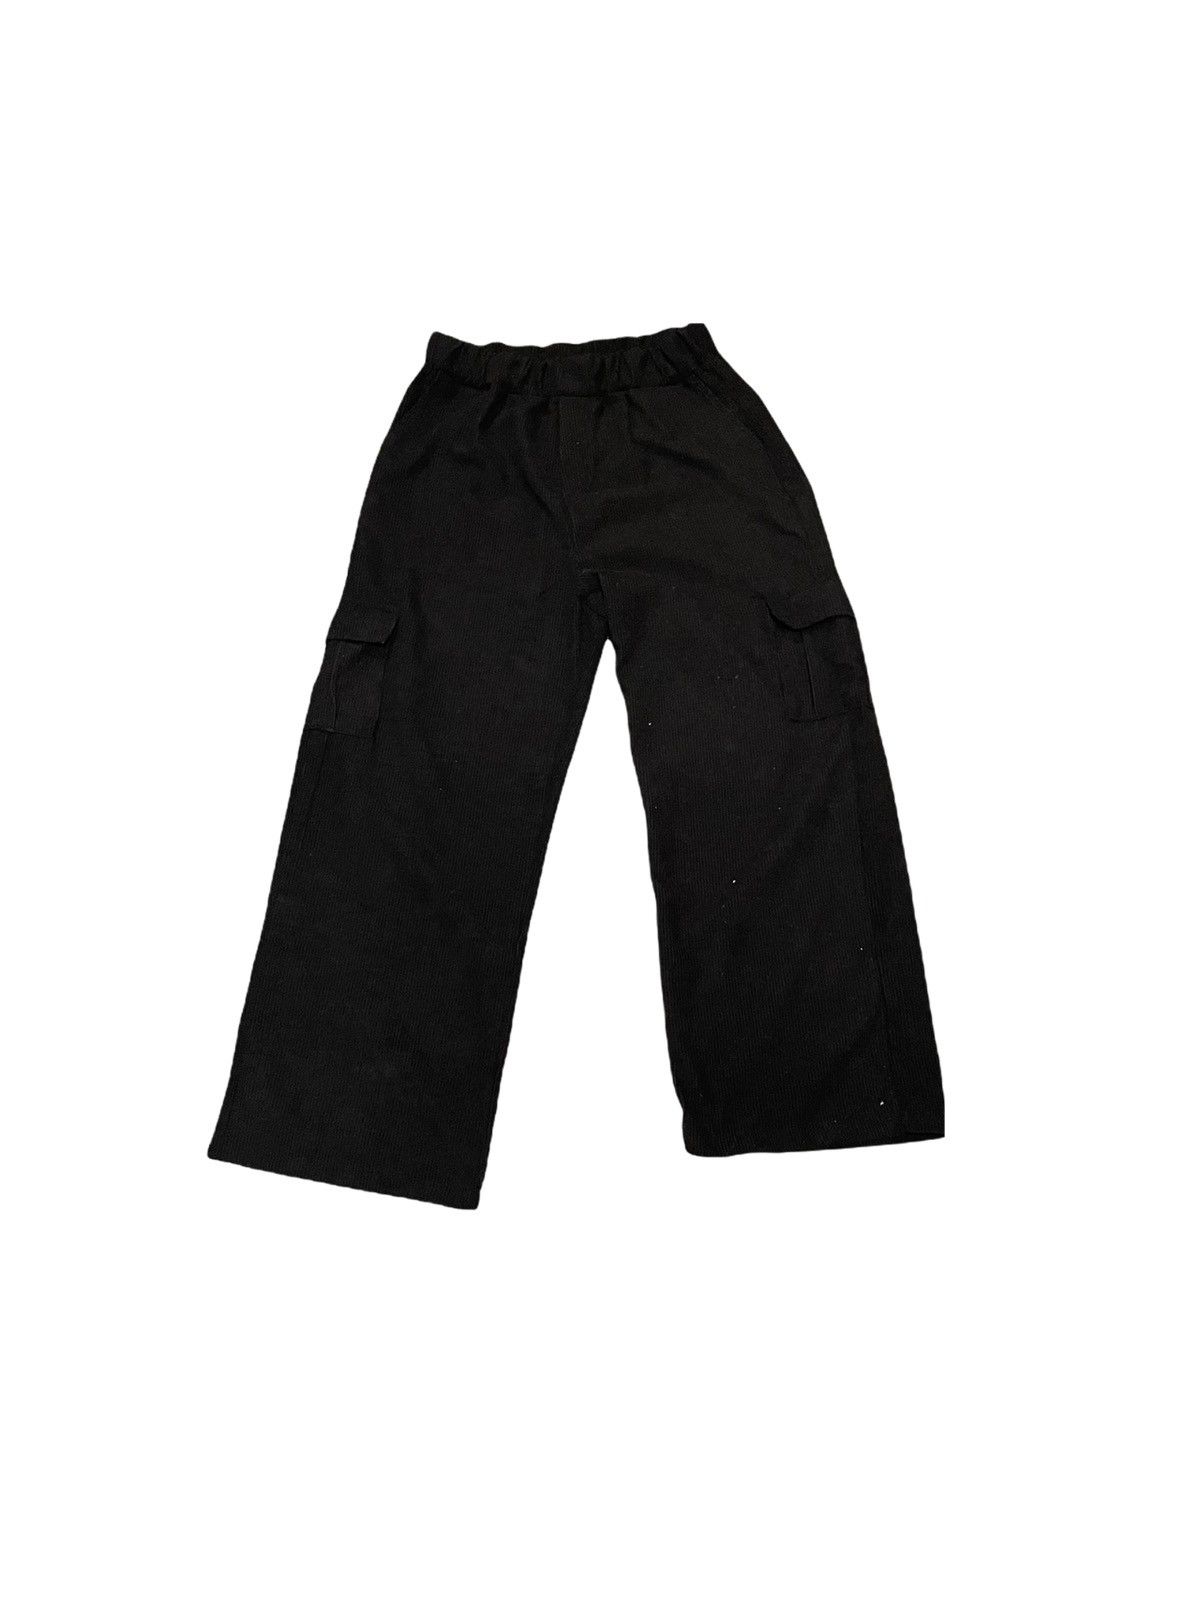 Vintage black corduroy loose fit pants | Grailed